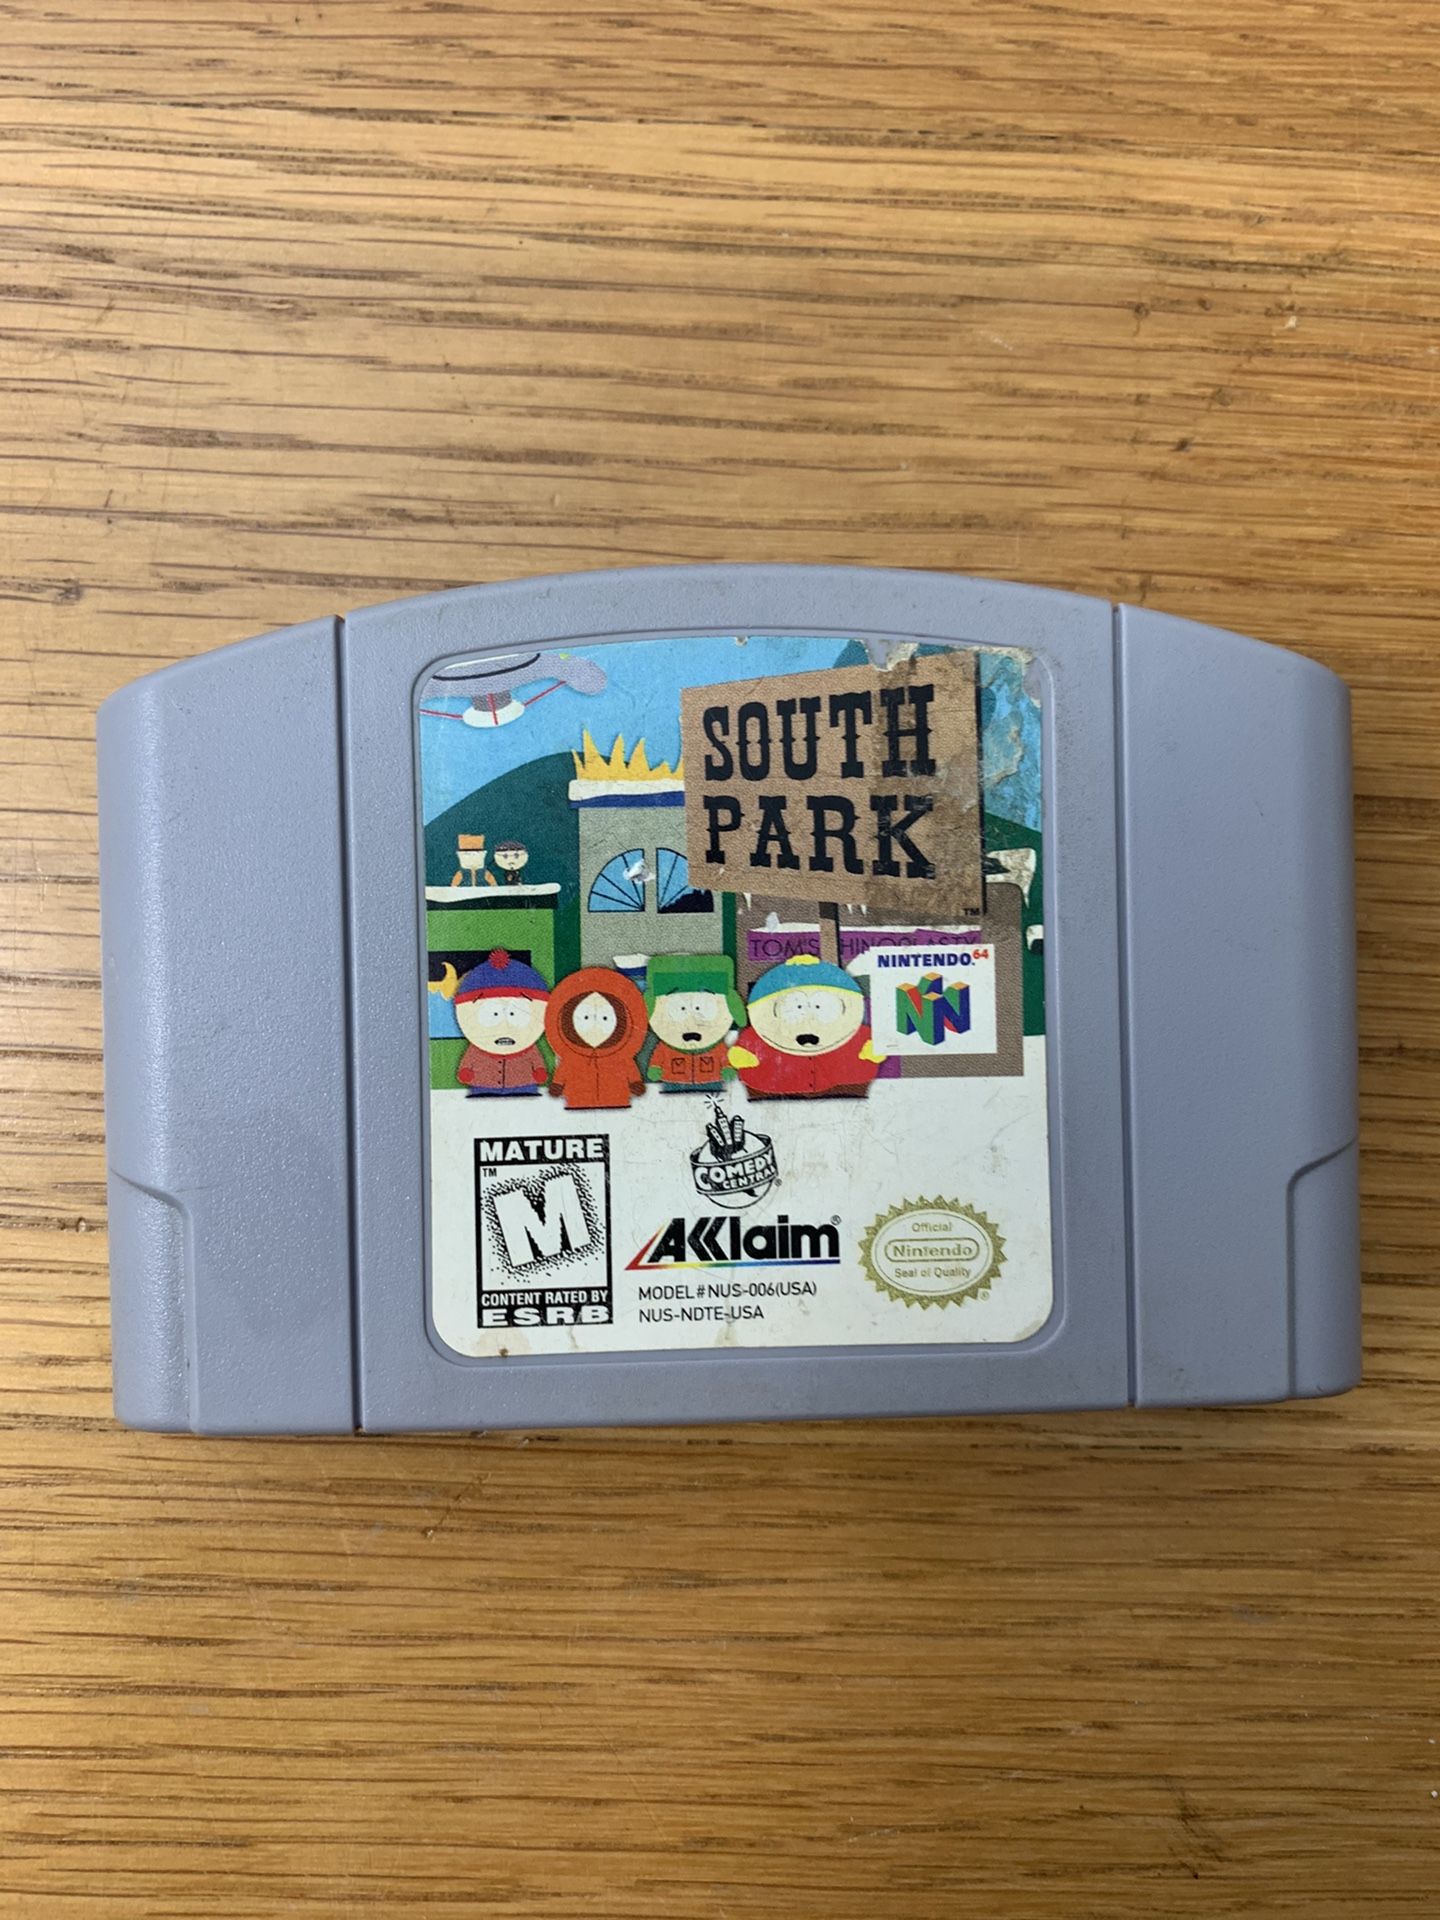 South Park Nintendo 64 game